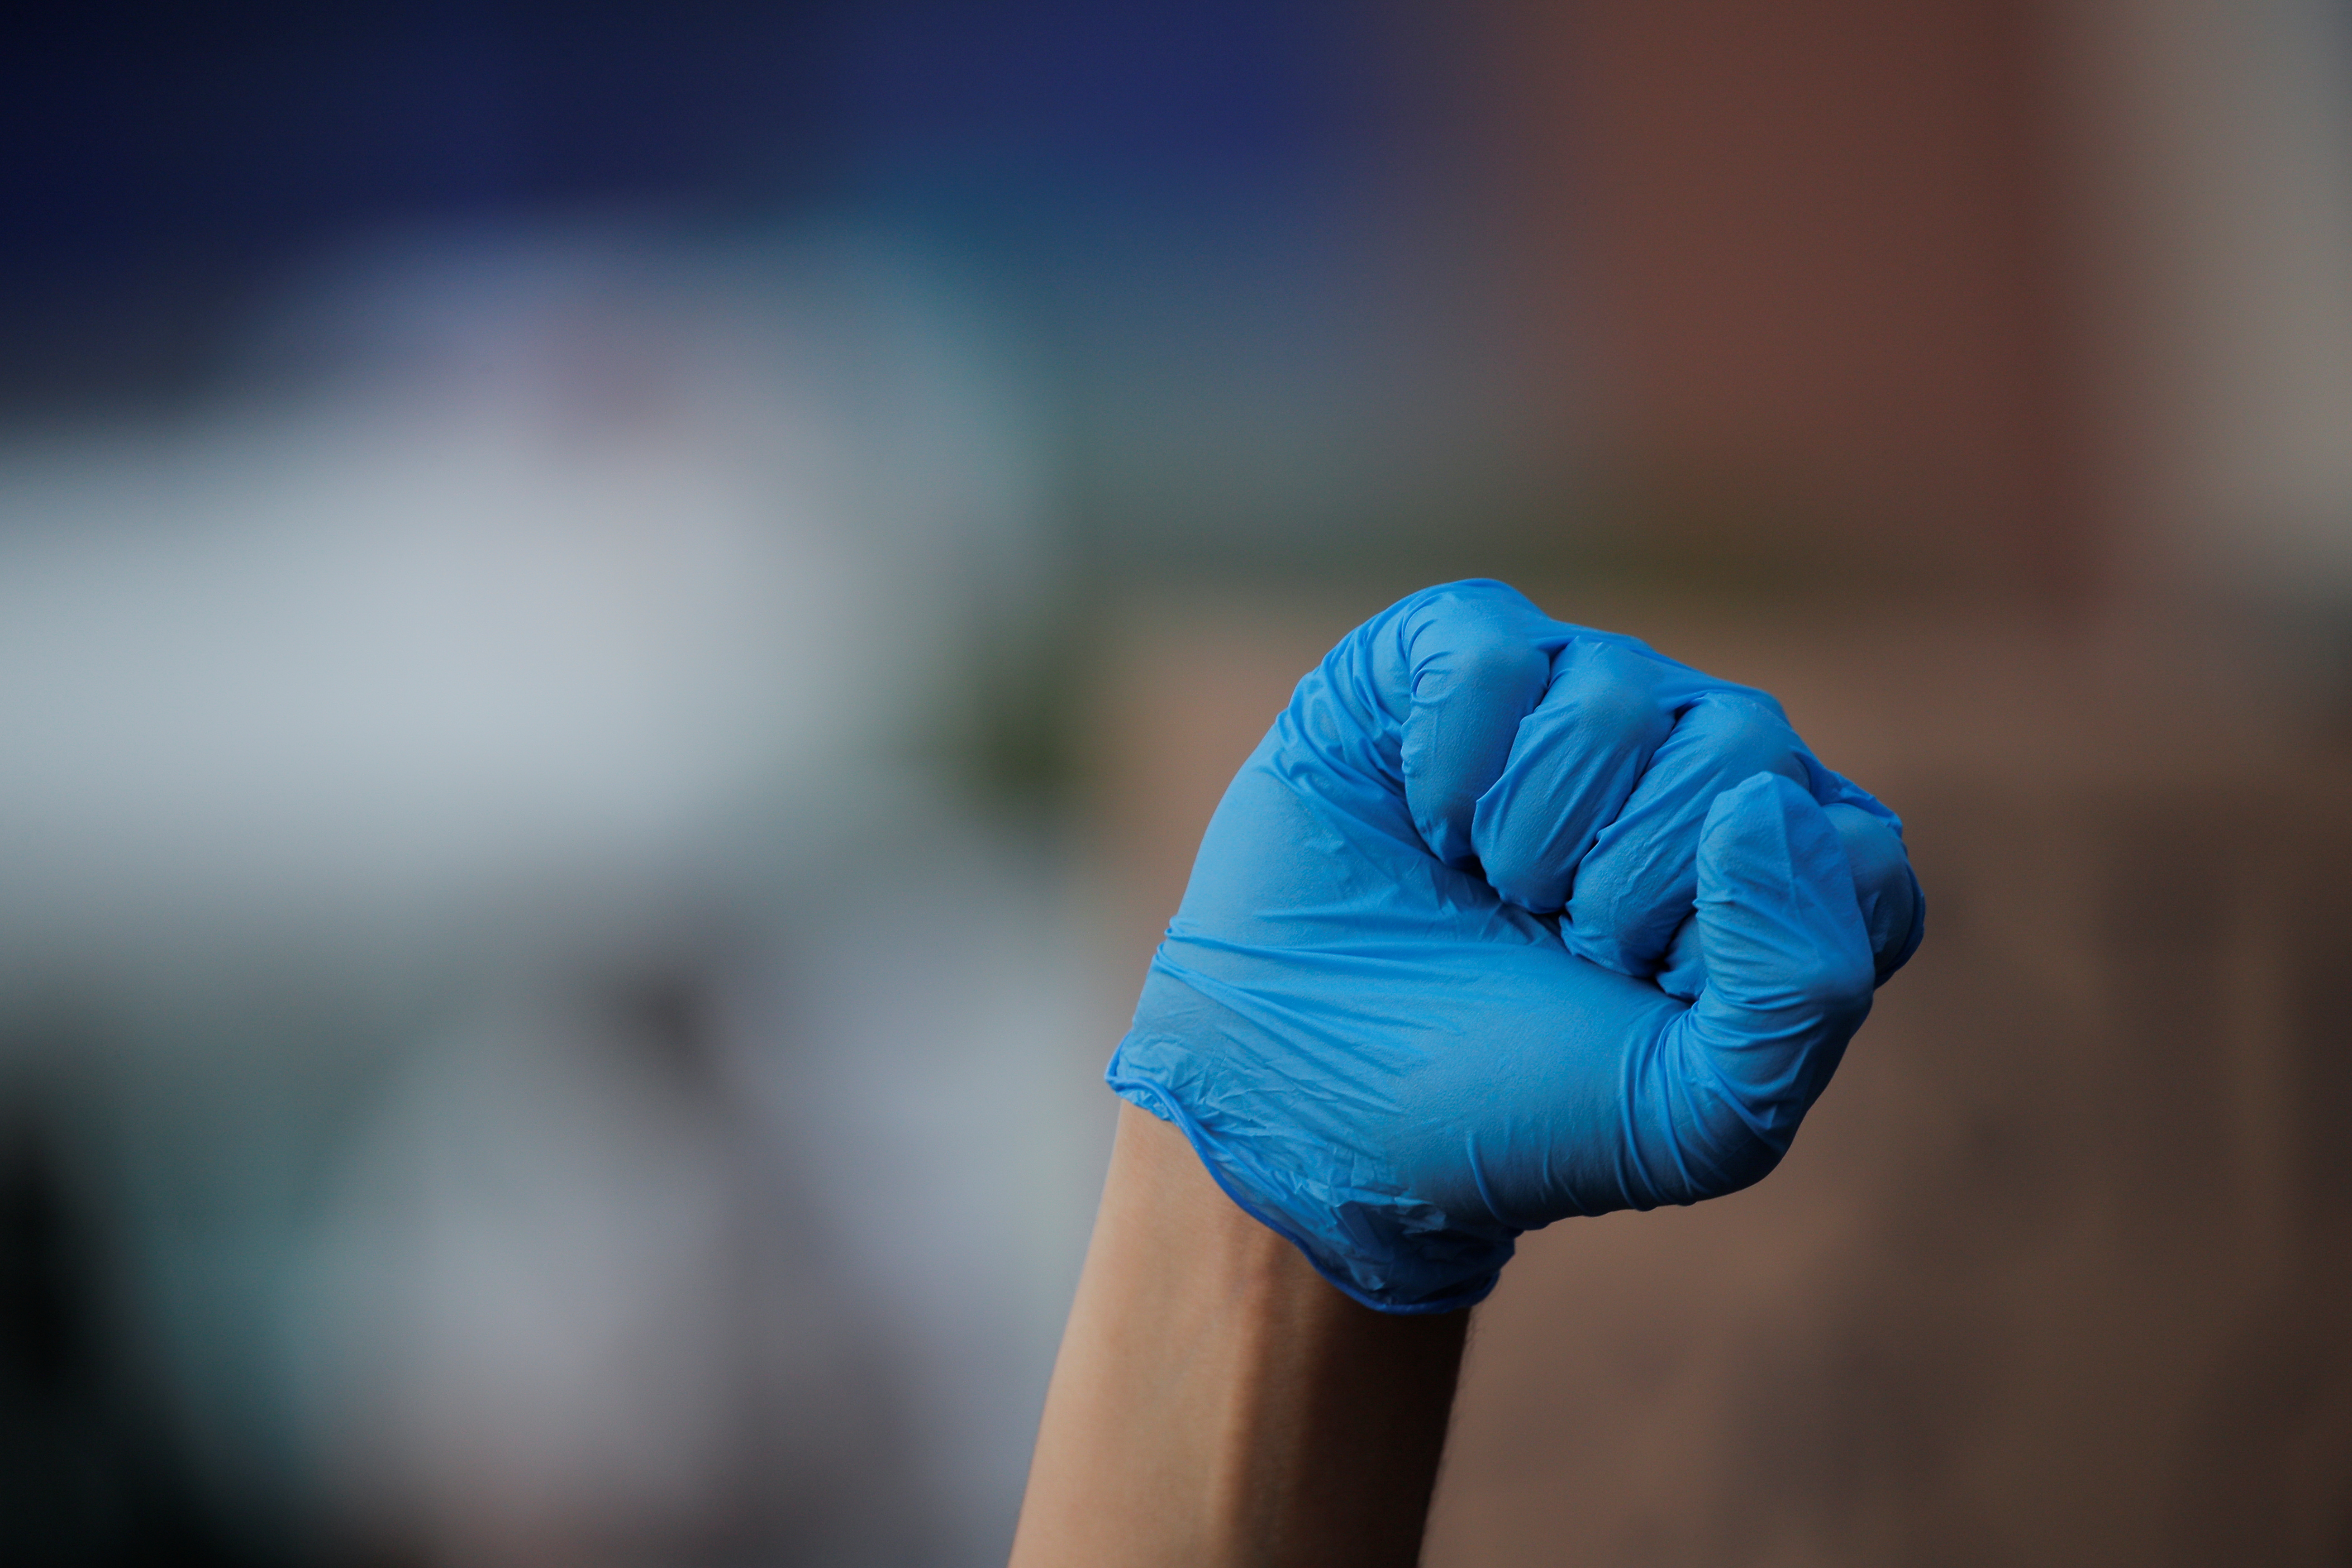 Un puño cerrado con un guante celeste es uno de los íconos que se han observado en las protestas (REUTERS/Brendan McDermid)